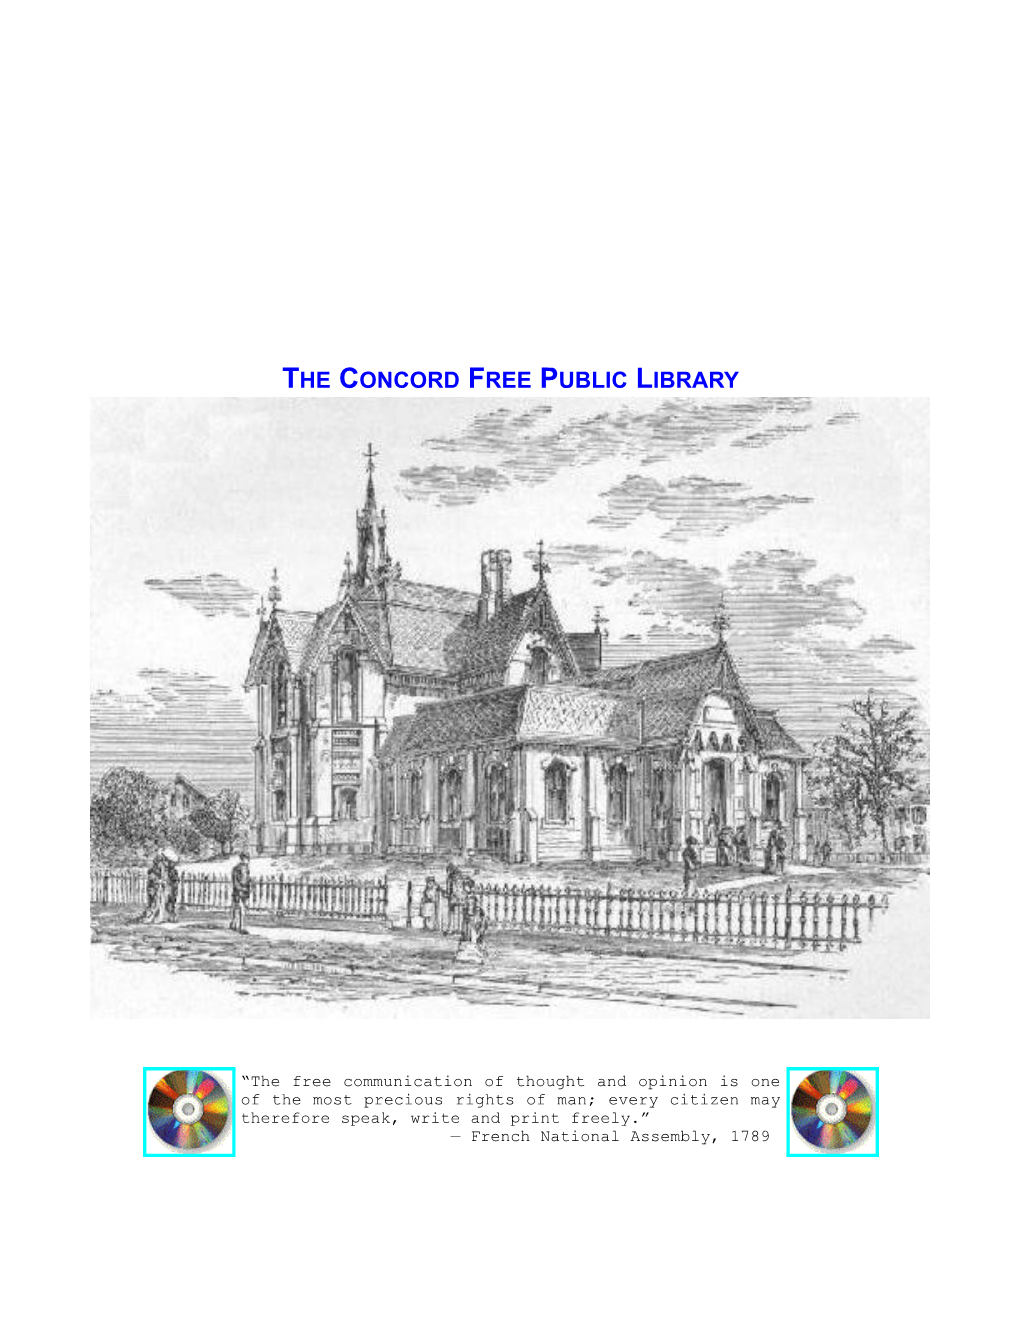 Concord Free Public Library